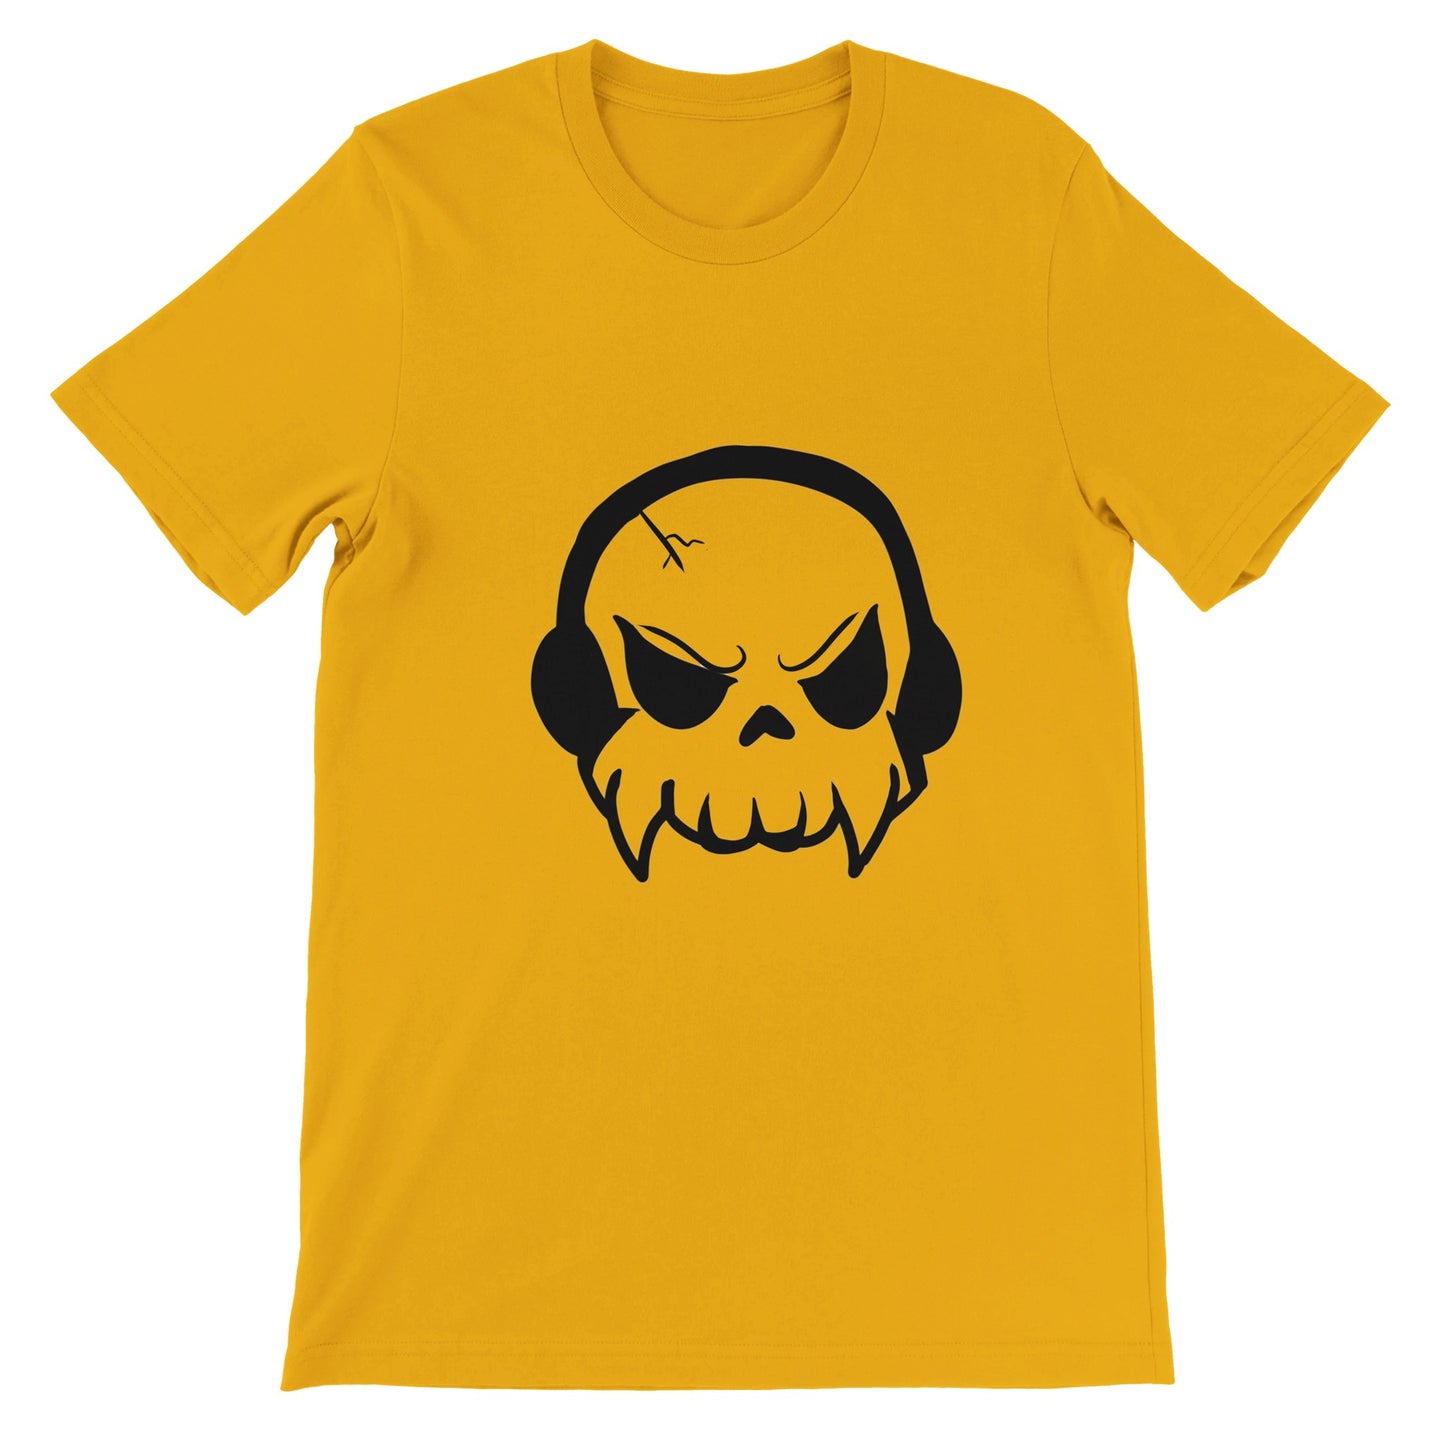 Music or Death - Premium Unisex Crewneck T-shirt